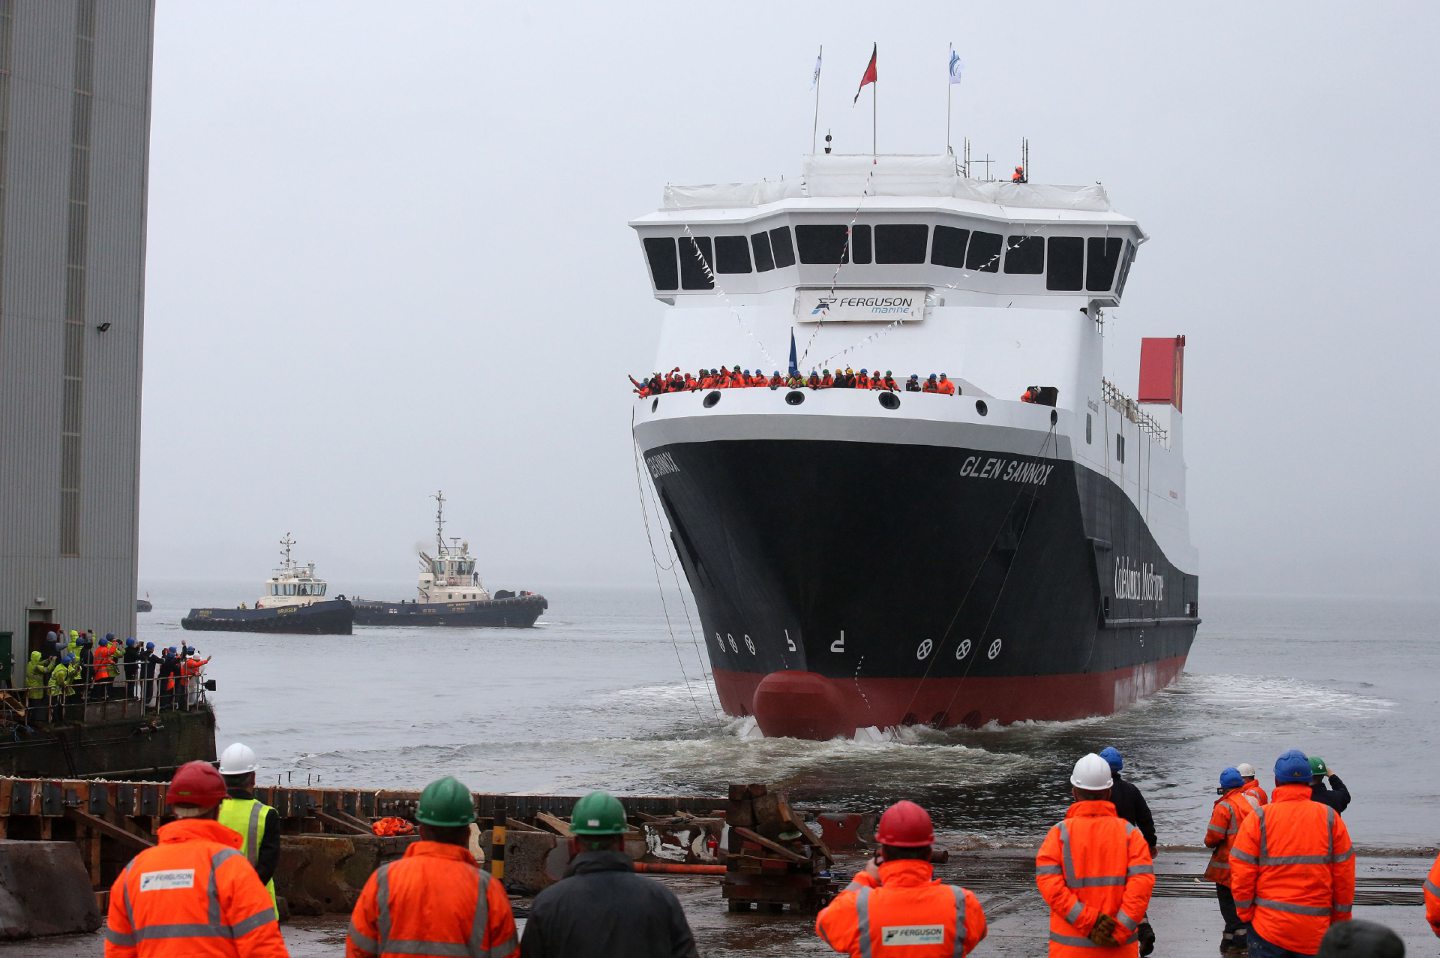 Alex Salmond: Ferry fiasco nothing to do with me